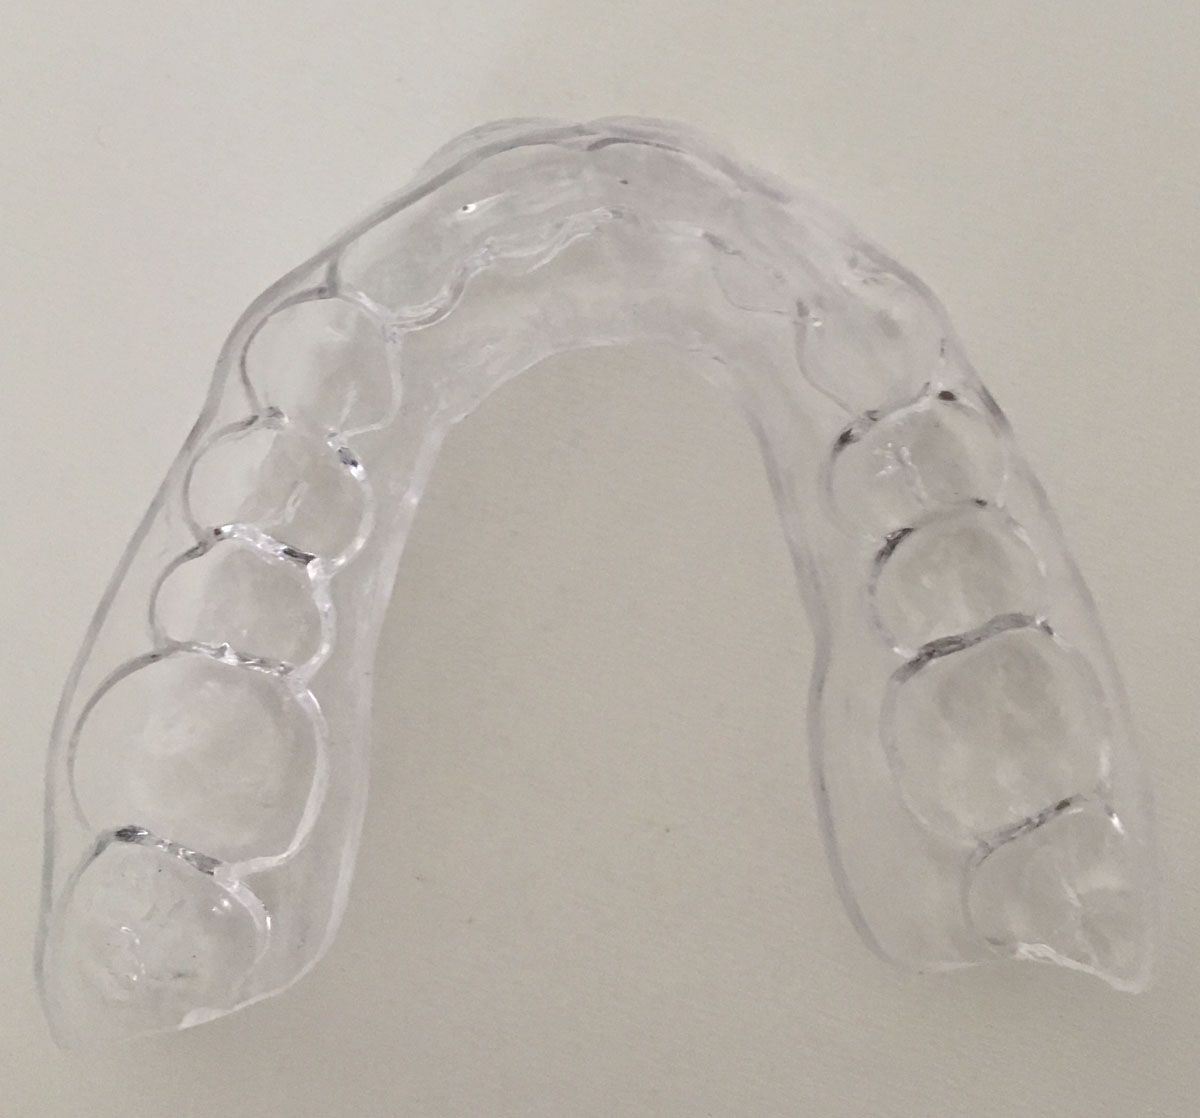 Orthodontie adulte bouche en chantier juin 2018